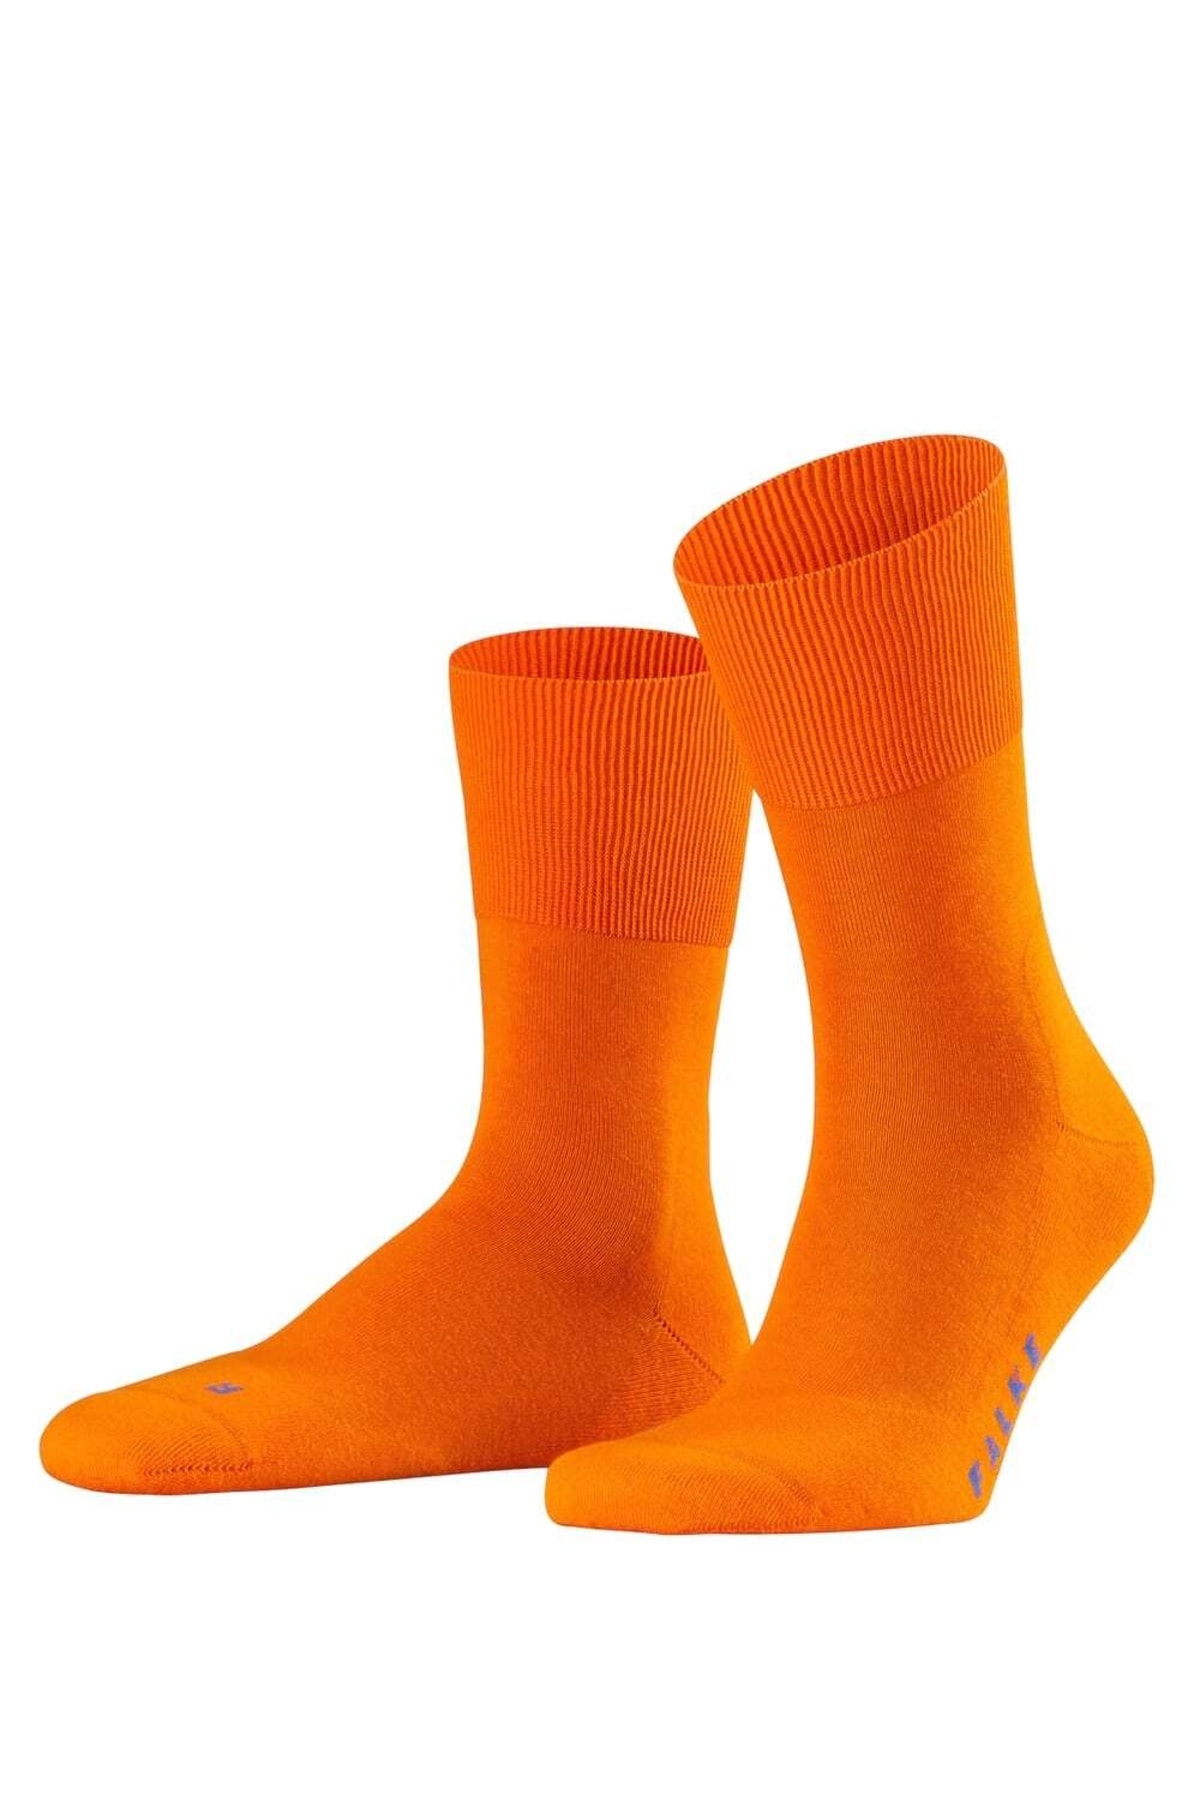 FALKE Socken Orange Sport Fast ausverkauft